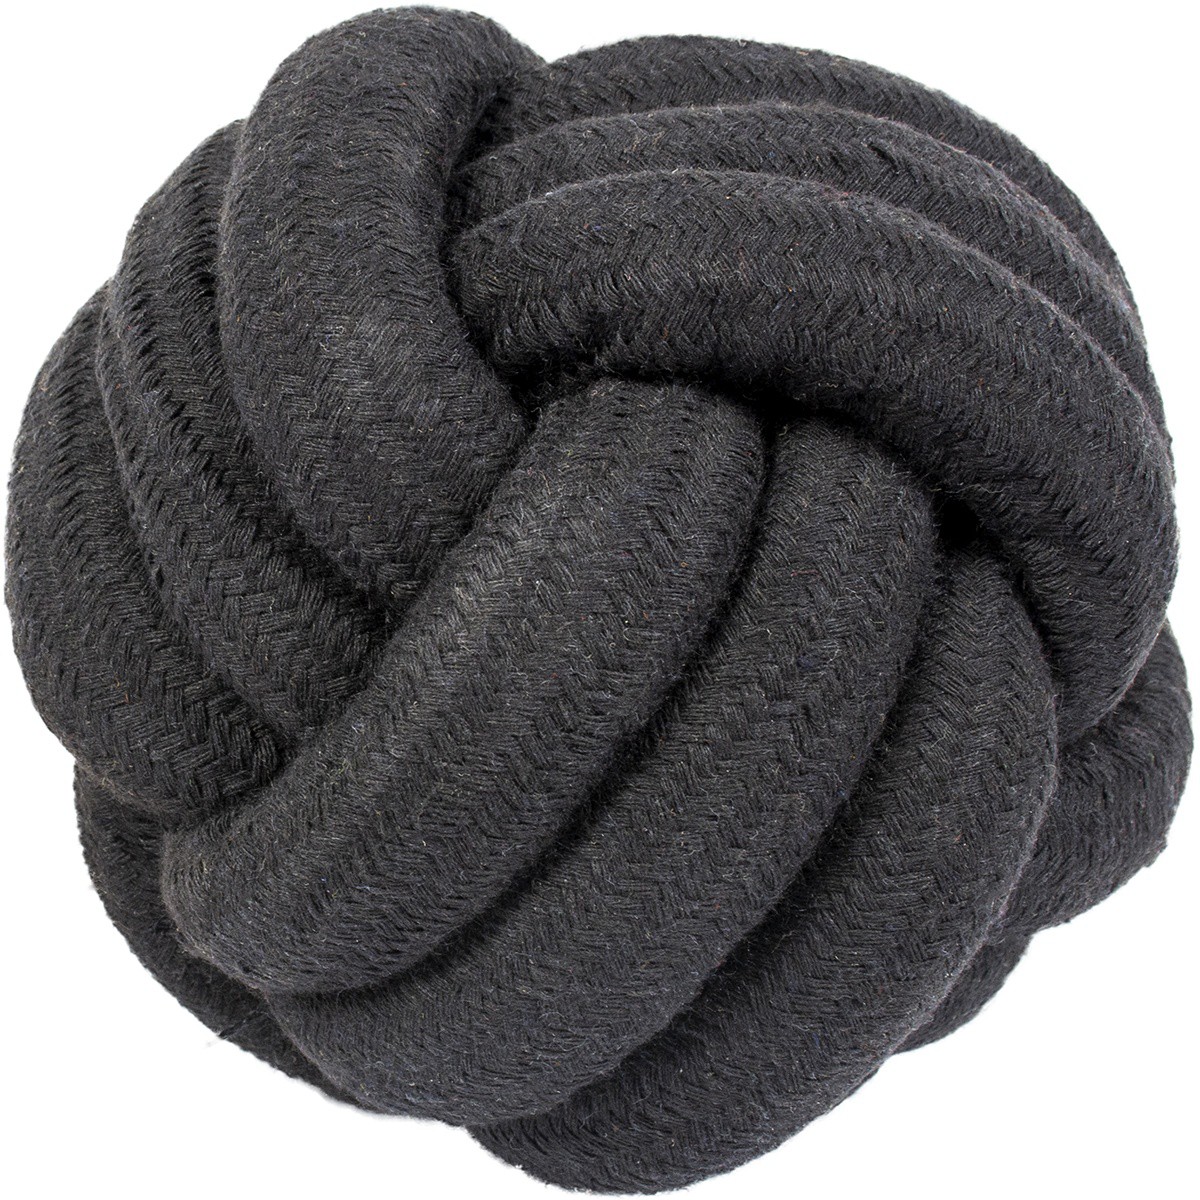   Rope Toys, Skip Balle S, Ø 9.5cm noir  Ø 9.5 cm